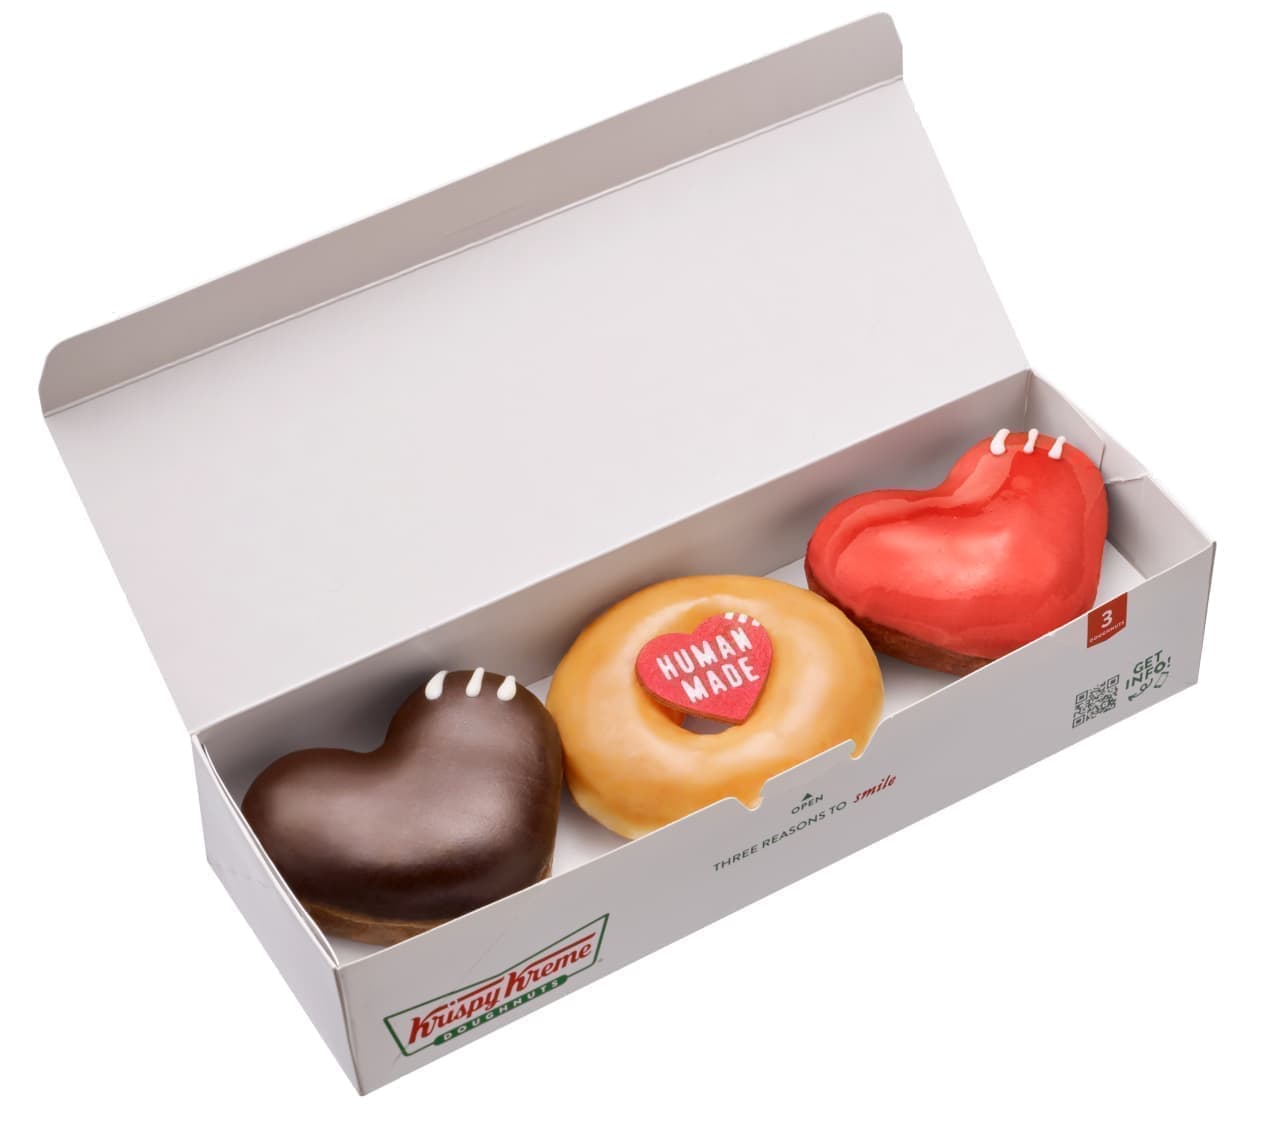 セール 登場から人気沸騰 Human made Krispy Kreme cushion econet.bi